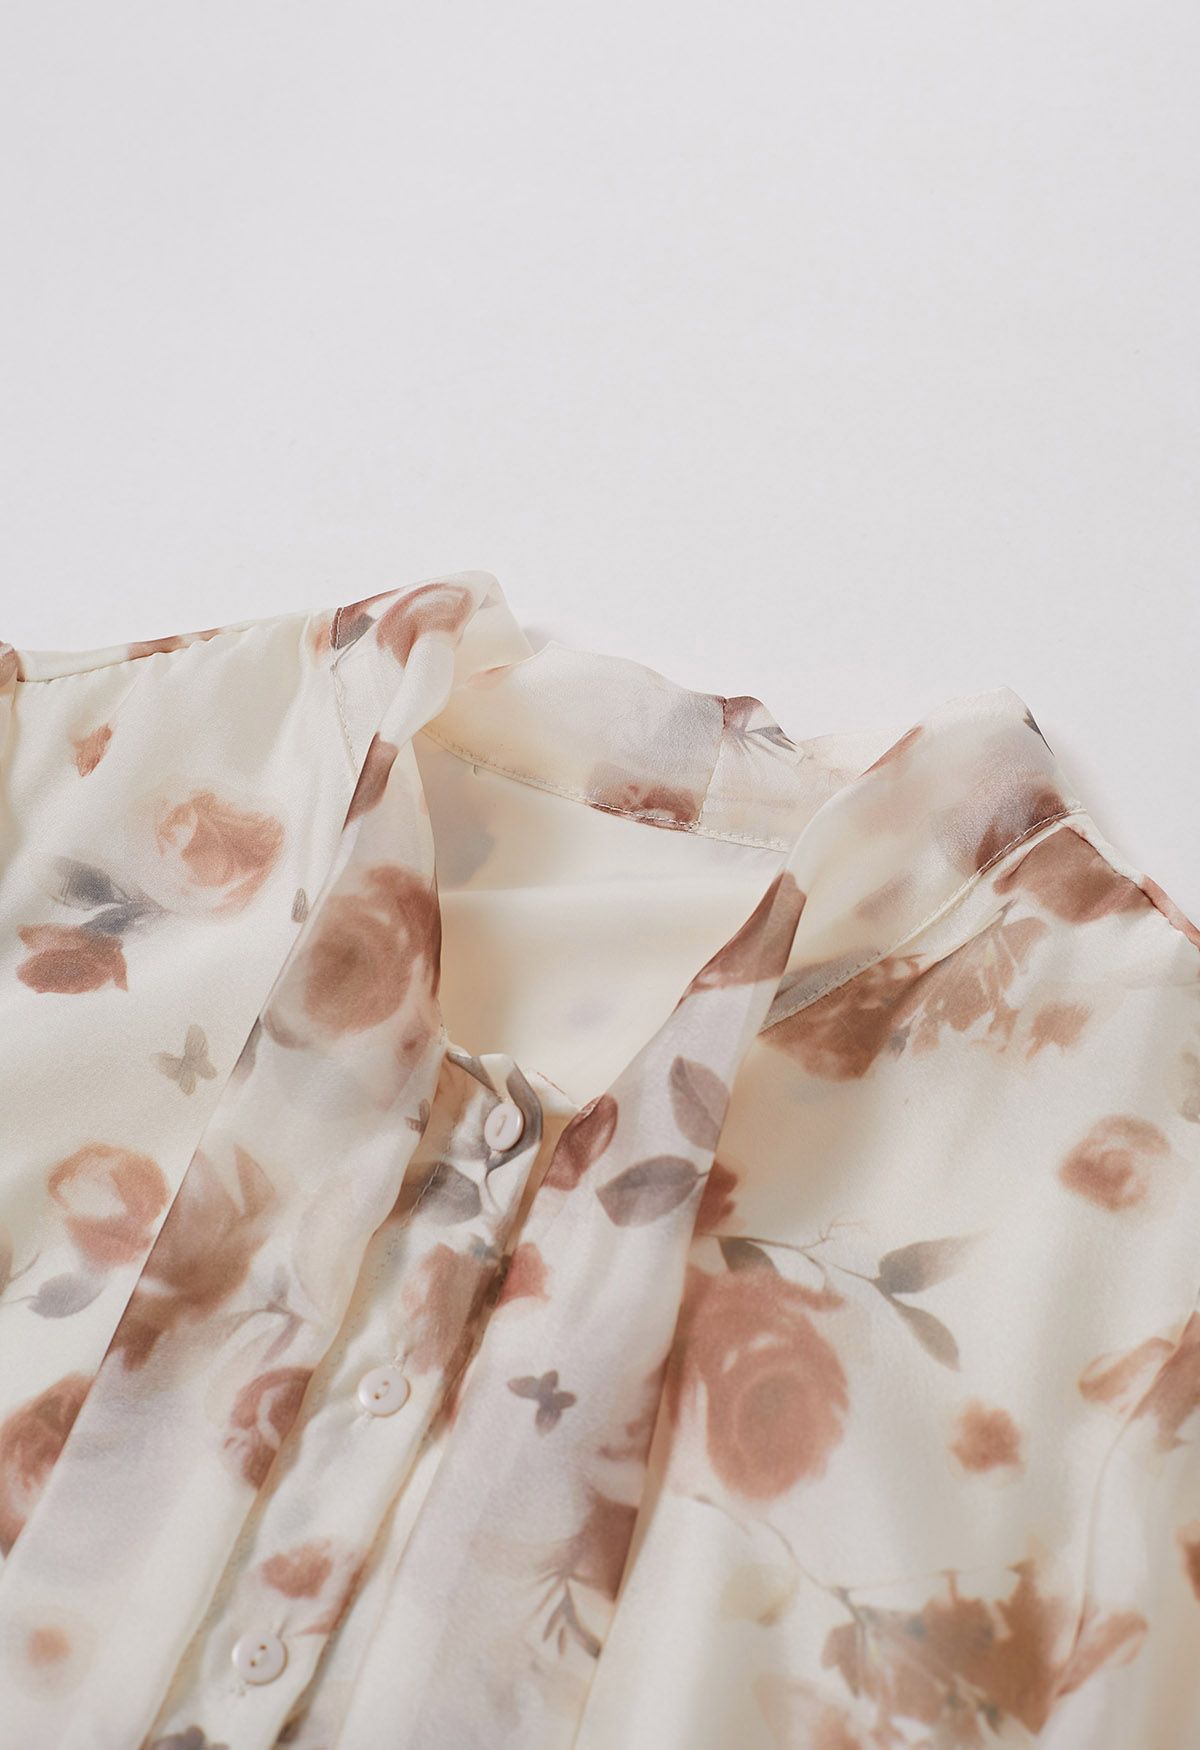 Transparentes Hemd im Herbst-Stil mit Rosen-Schleife